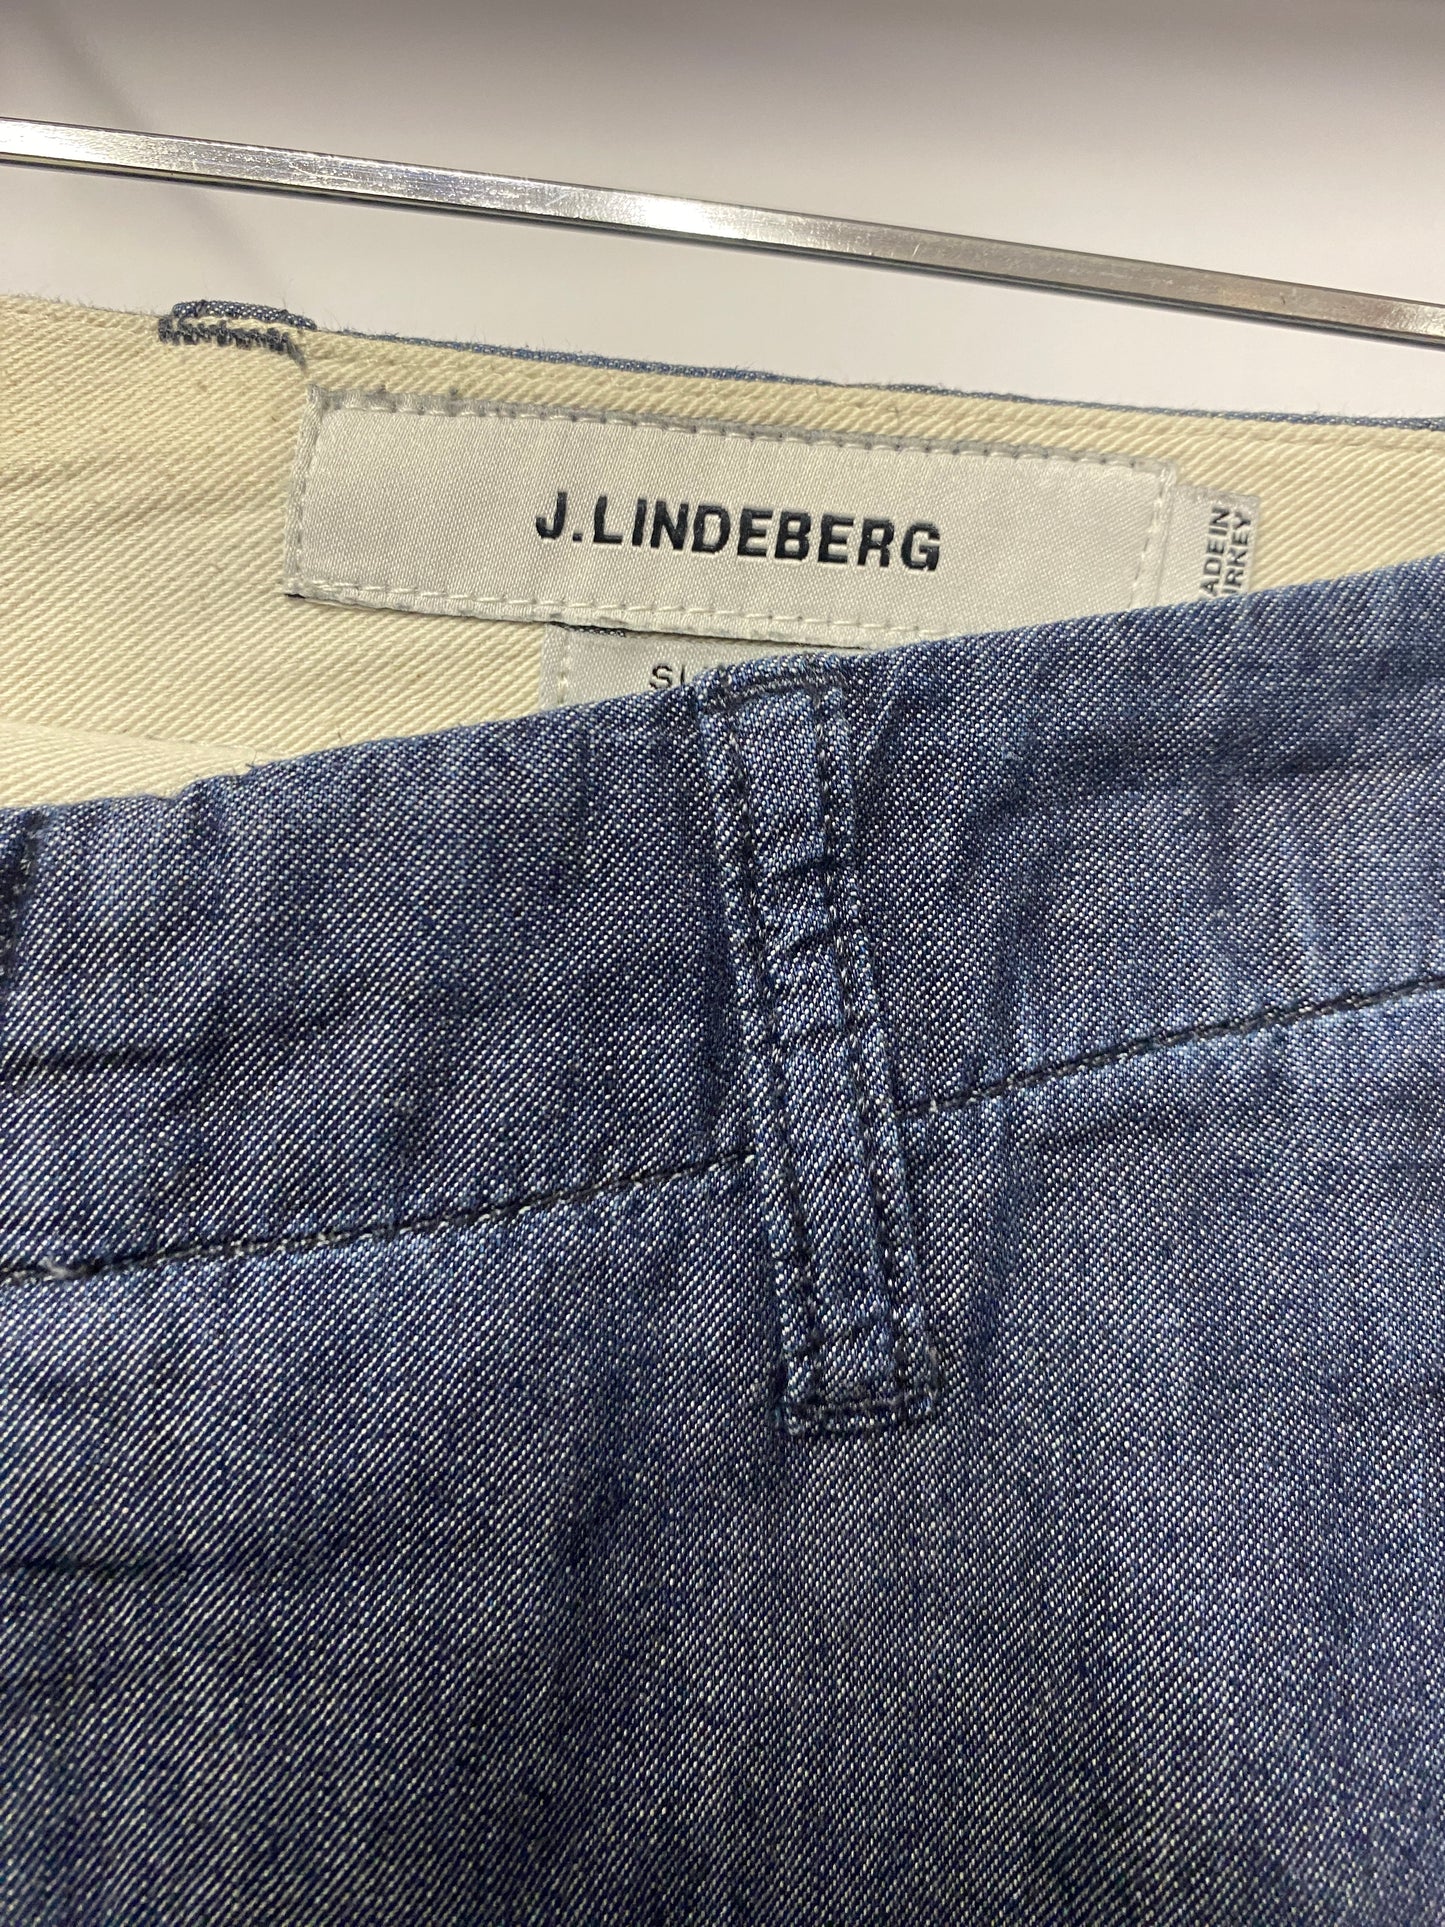 J.Lindeberg Blue Lightweight Men's Trousers Large